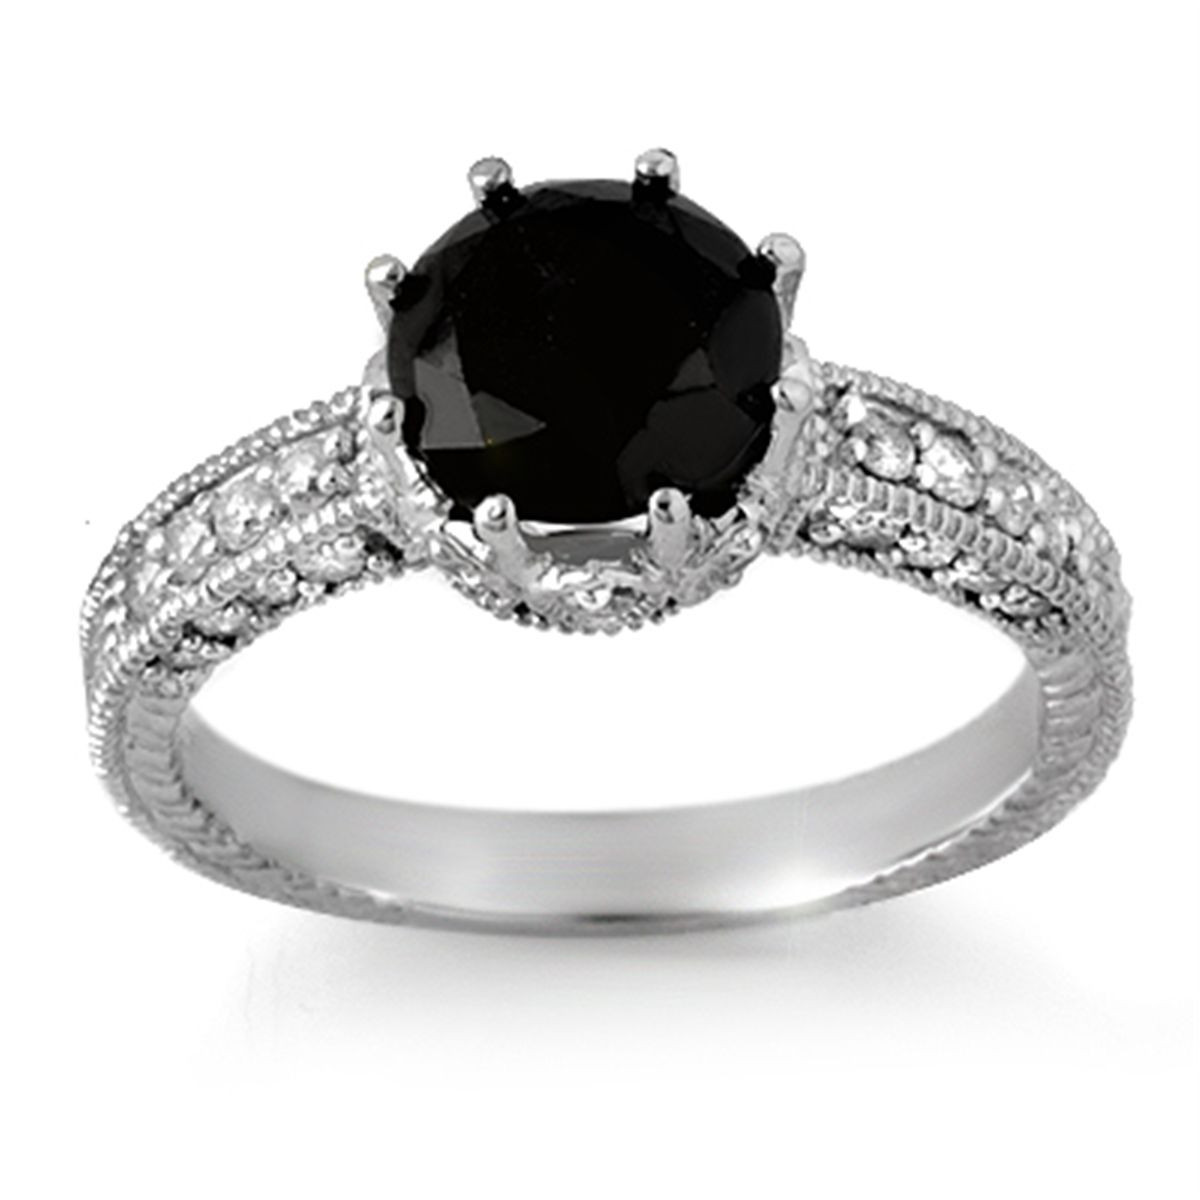 Wedding Rings Black Diamond
 The Sensuous Black Diamond Rings